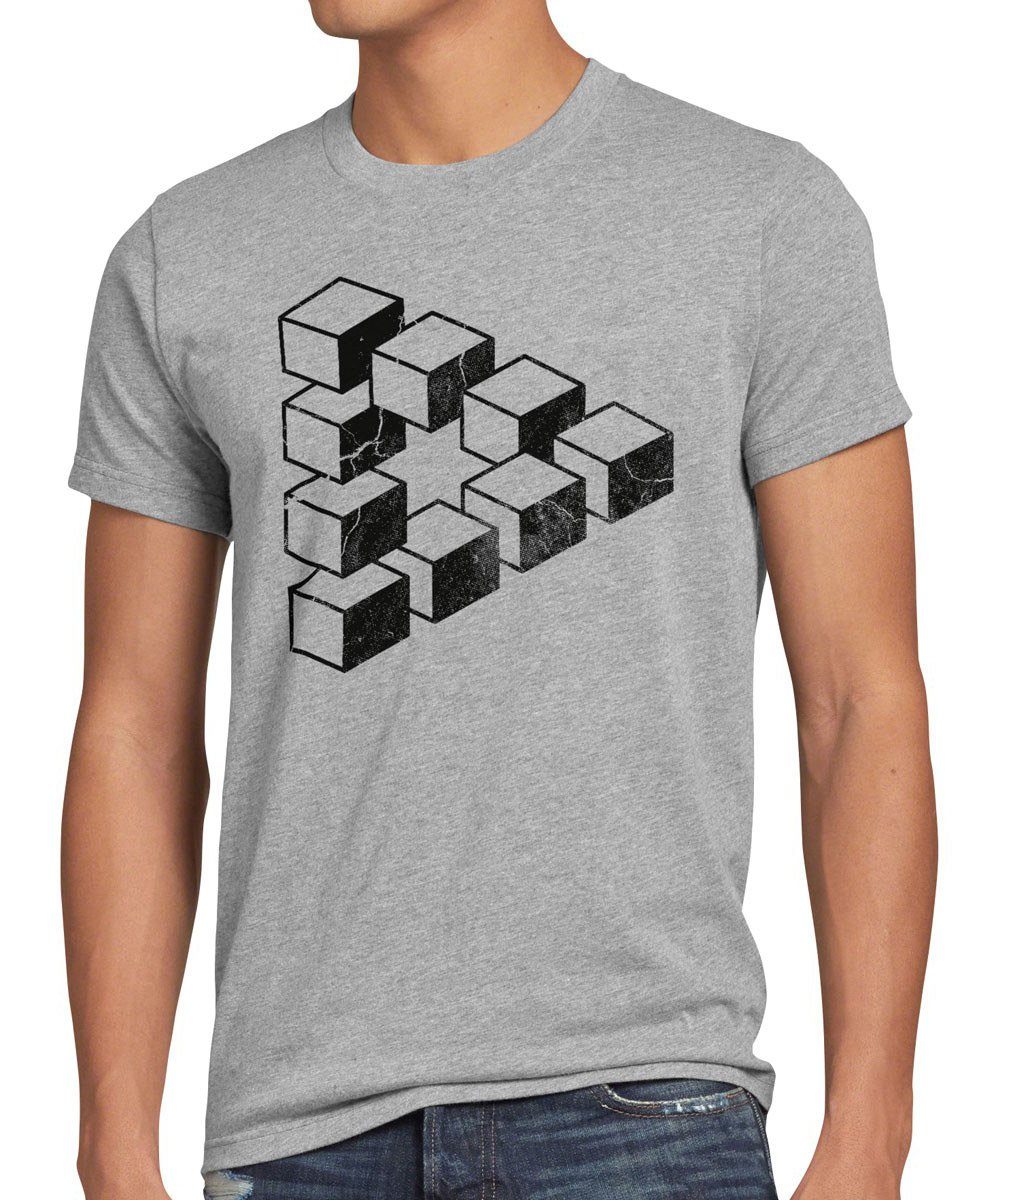 style3 Print-Shirt Herren T-Shirt Cube Big Sheldon würfel Escher Cooper Penrose Dreieck Theory bang grau meliert